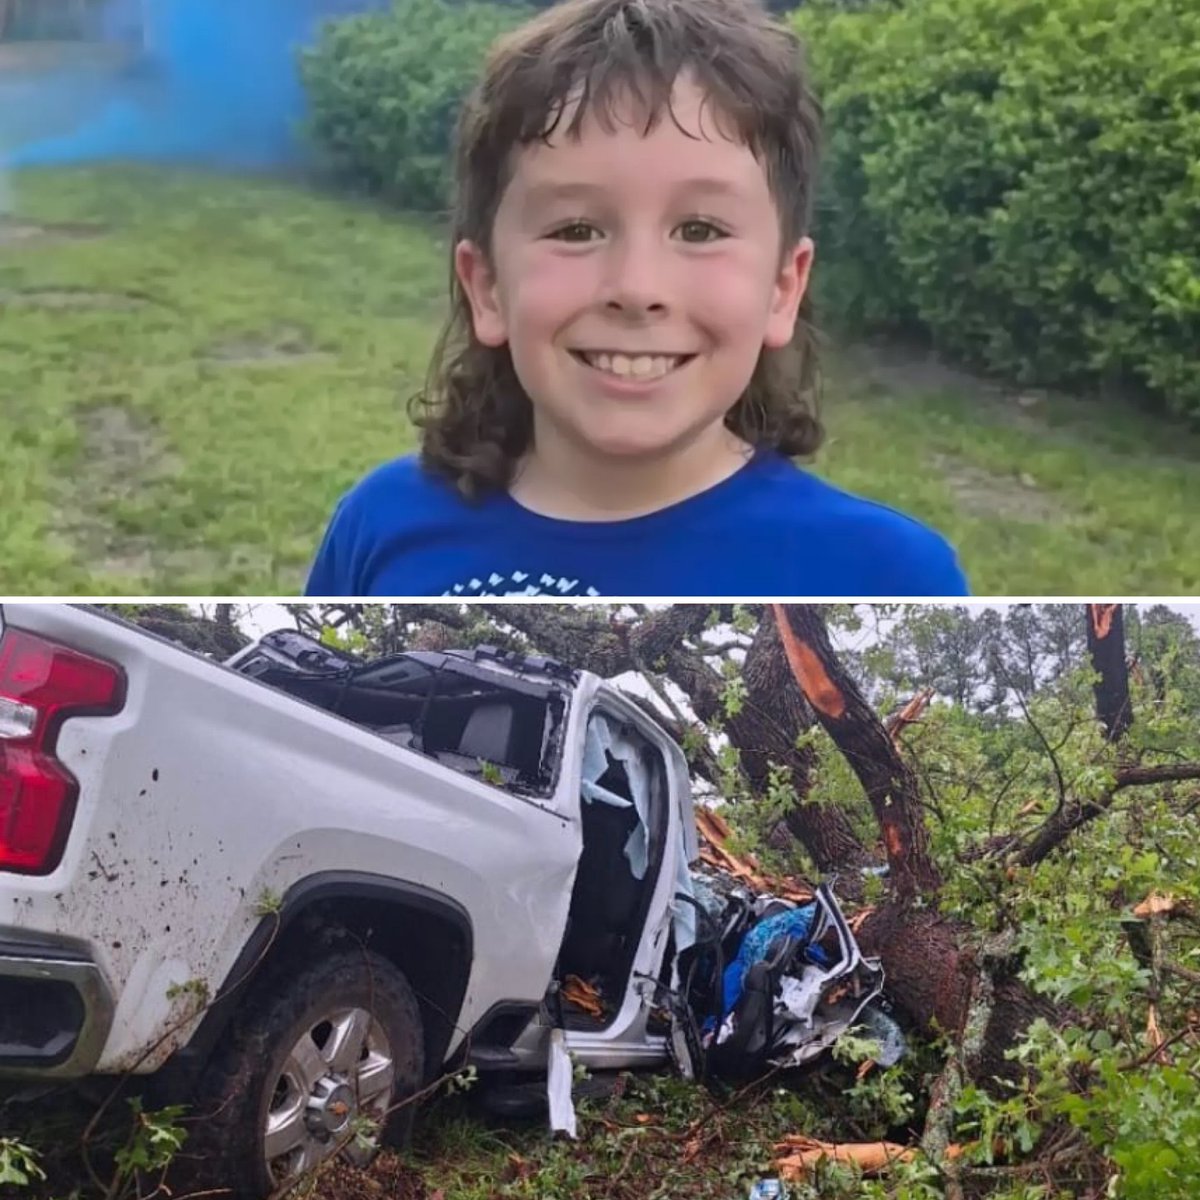 🇺🇲 Il sauve la vie de ses parents en pleine tornade ! Alors que les parents de Brandon étaient piégés dans leur voiture suite à un accident provoqué par une tornade, le garçon de 9 ans a couru pendant plusieurs kilomètres en pleine tempête pour trouver de l'aide ! 👏 (NYPost)